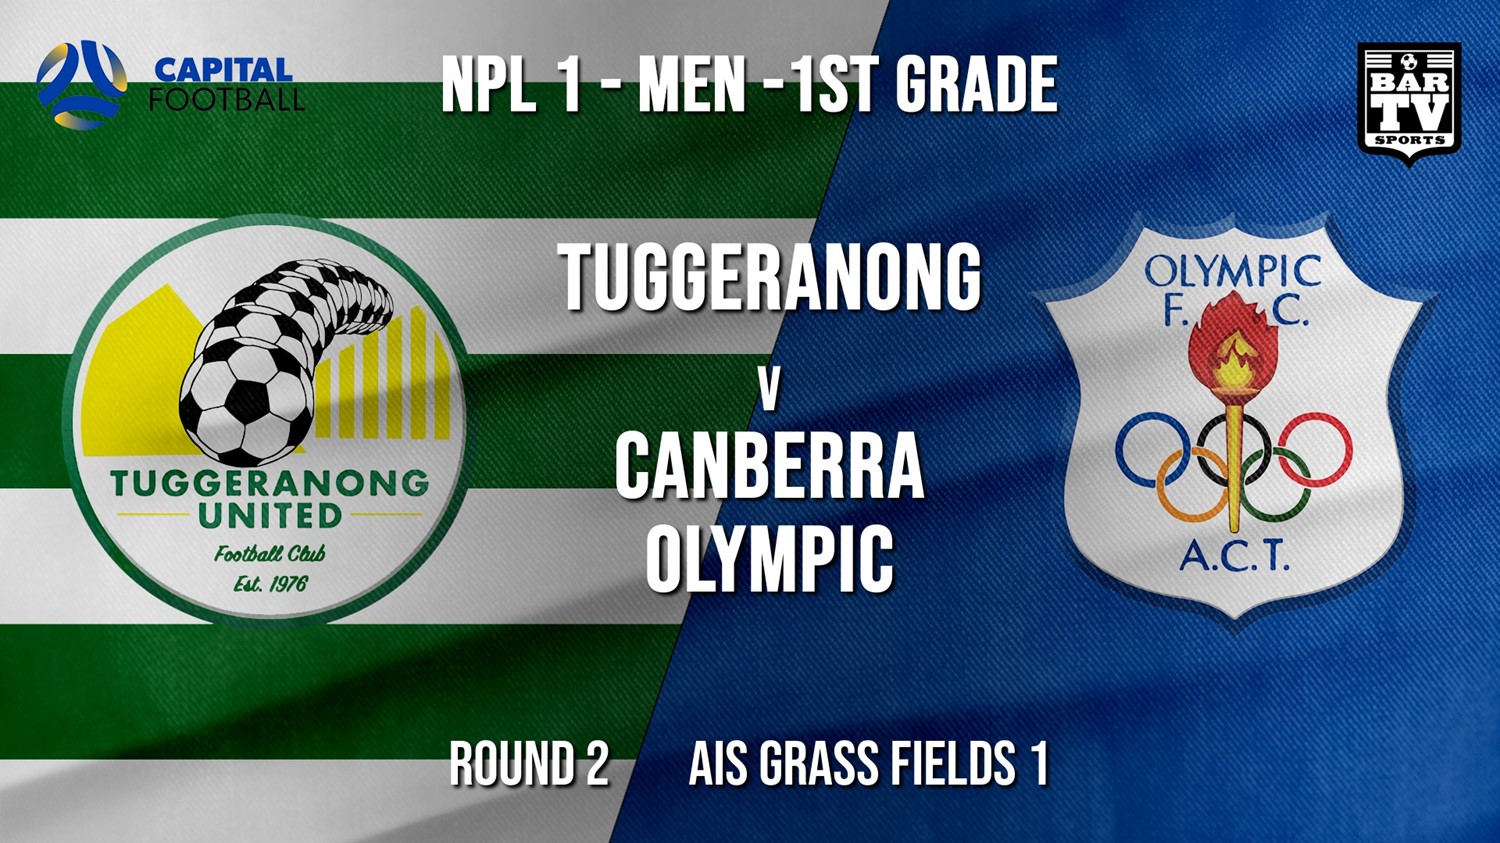 NPL - CAPITAL Round 2 - Tuggeranong United FC v Canberra Olympic FC Minigame Slate Image